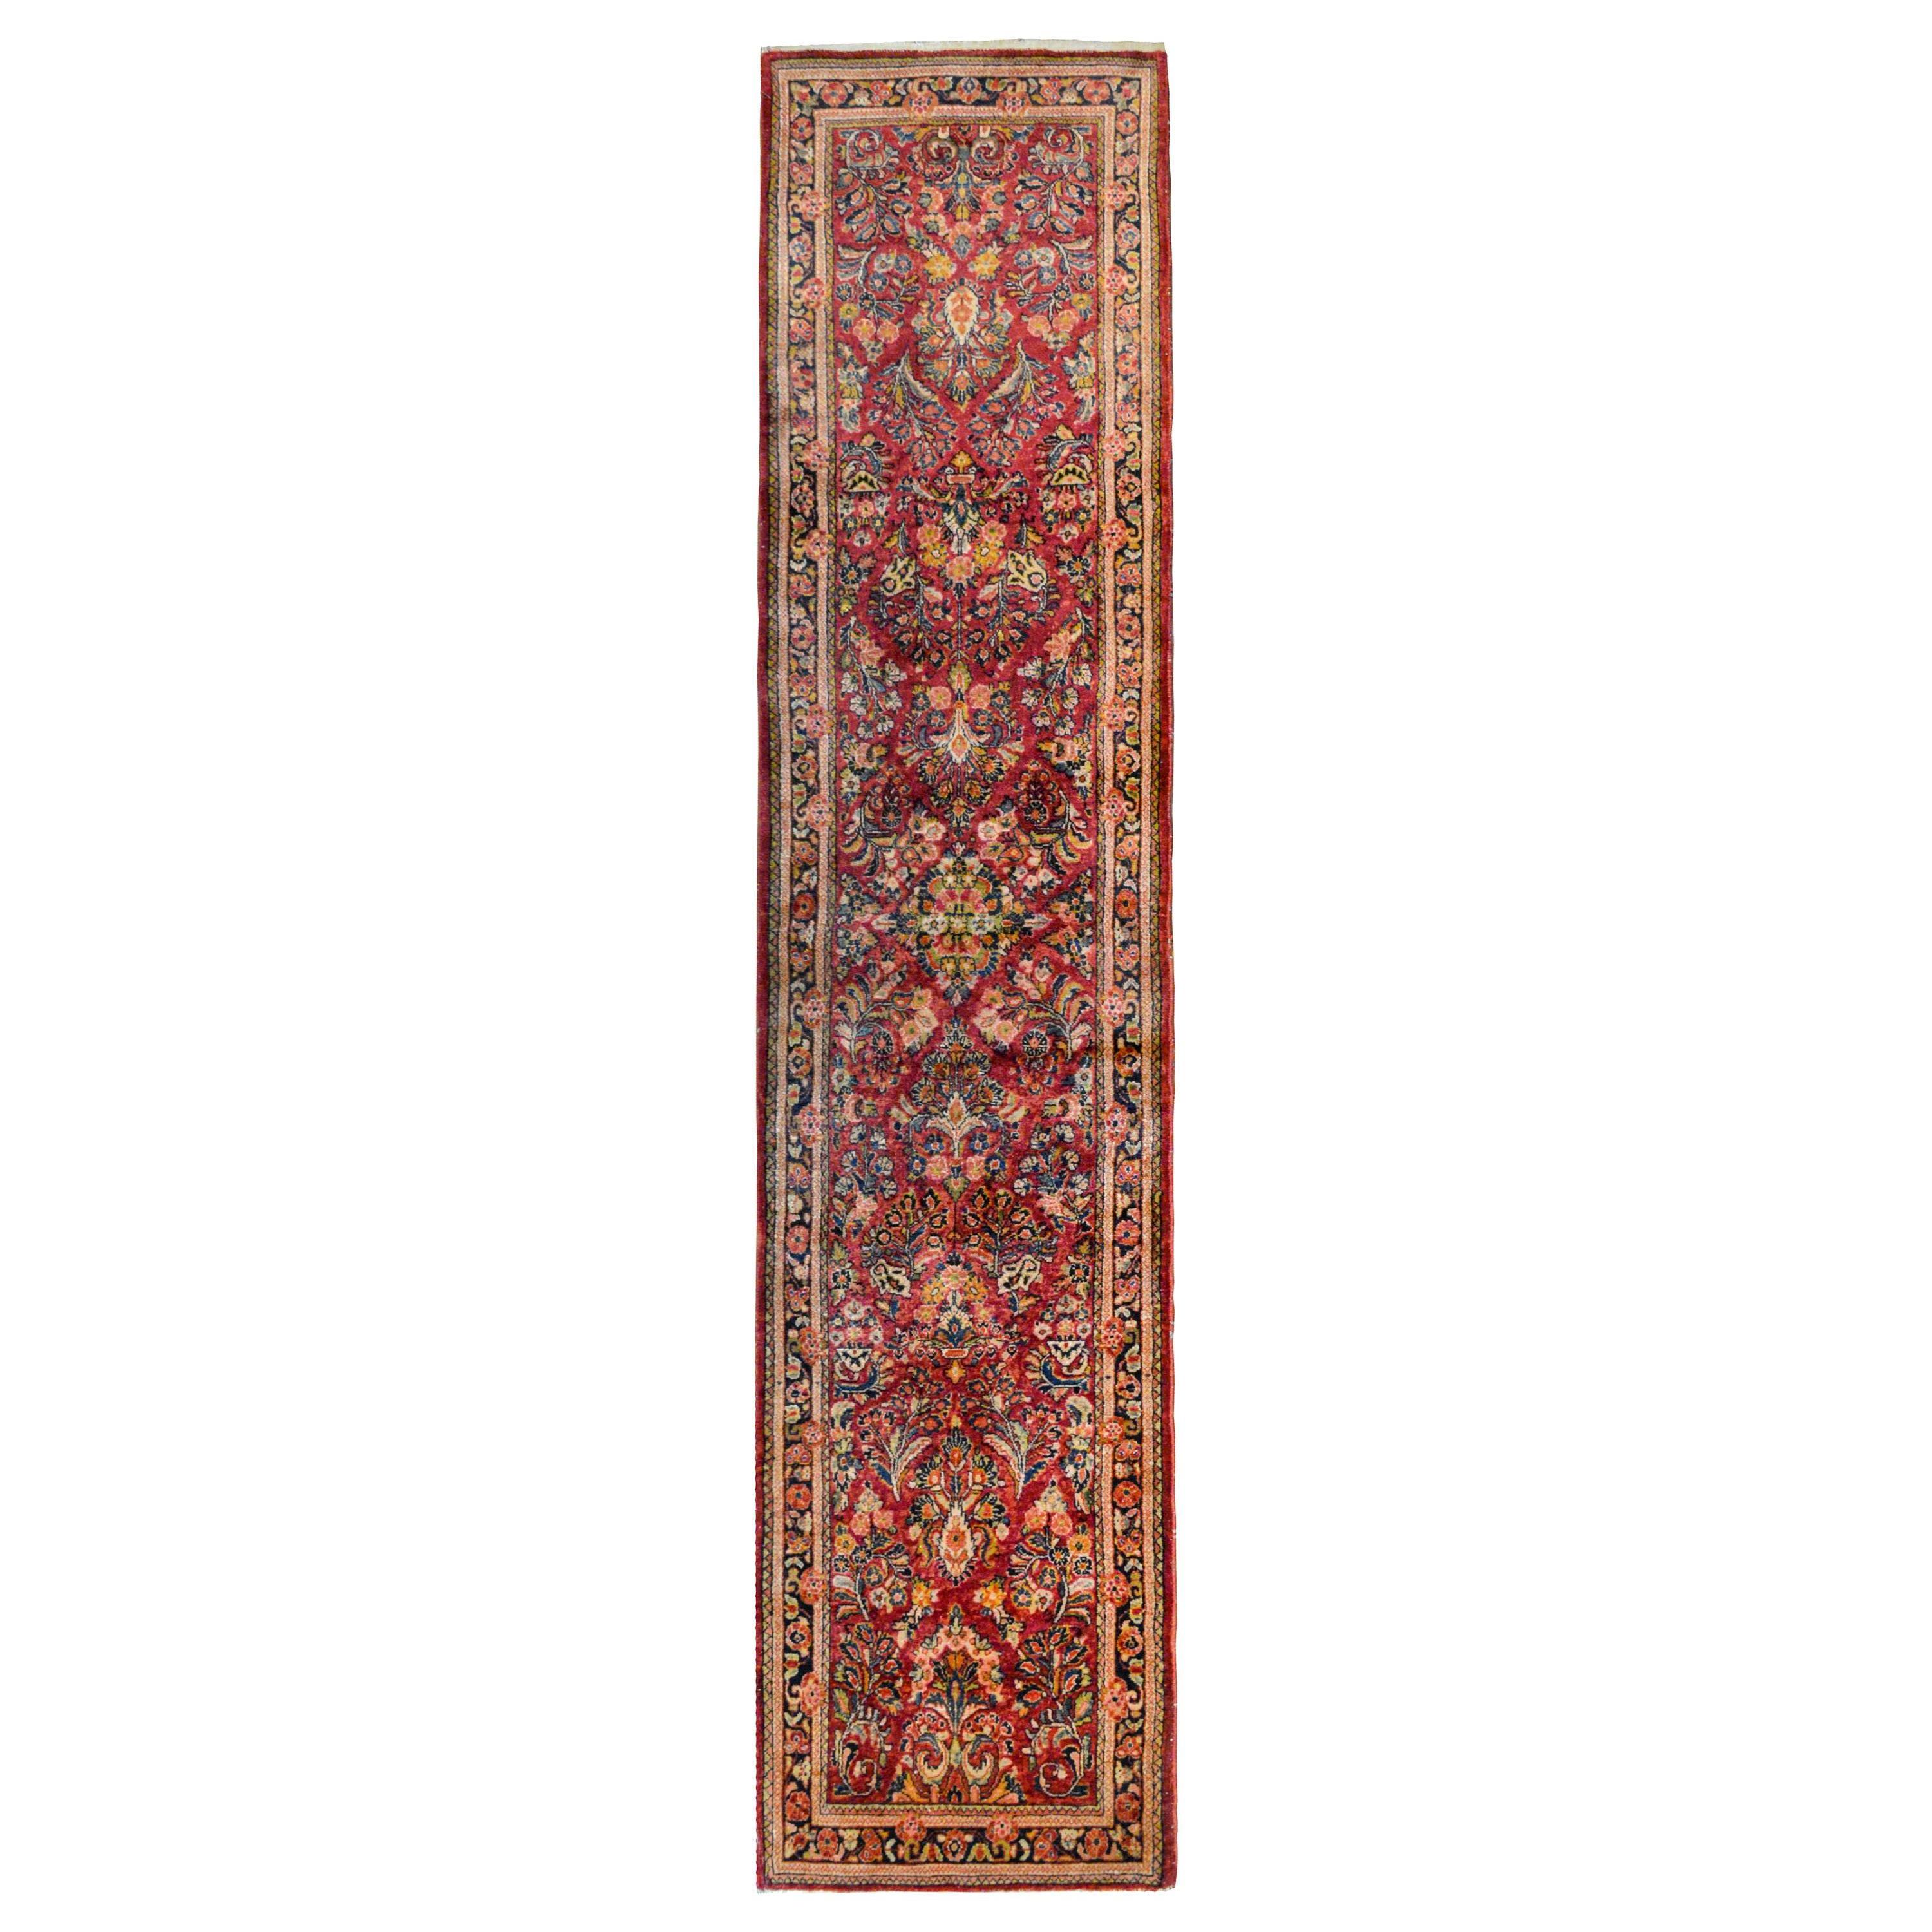 Sarouk-Teppich des frühen 20. Jahrhunderts